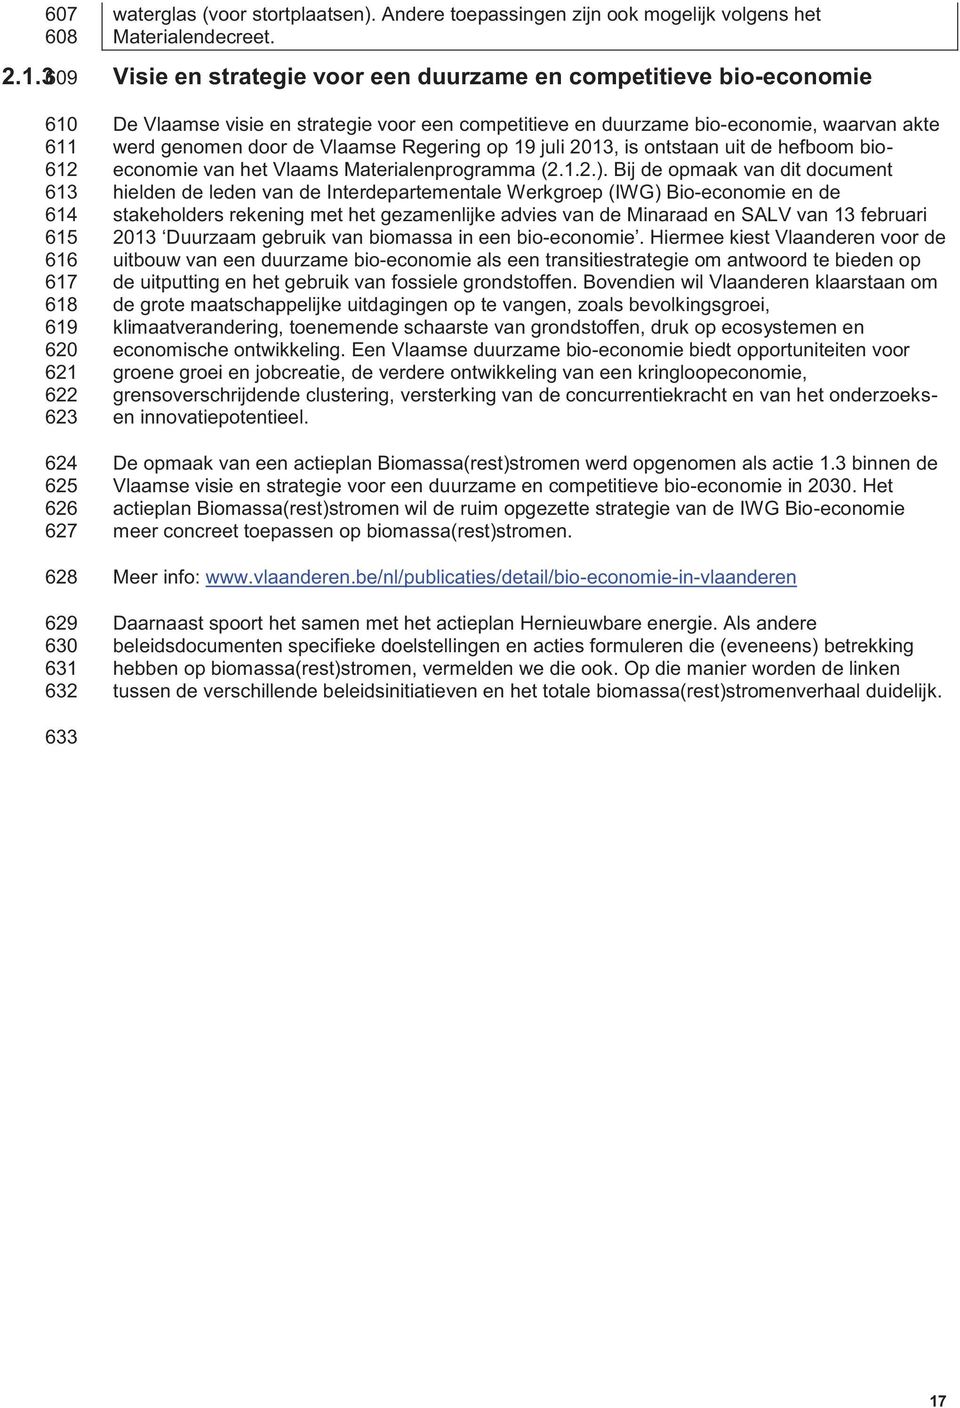 een competitieve en duurzame bio-economie, waarvan akte werd genomen door de Vlaamse Regering op 19 juli 2013, is ontstaan uit de hefboom bioeconomie van het Vlaams Materialenprogramma (2.1.2.).